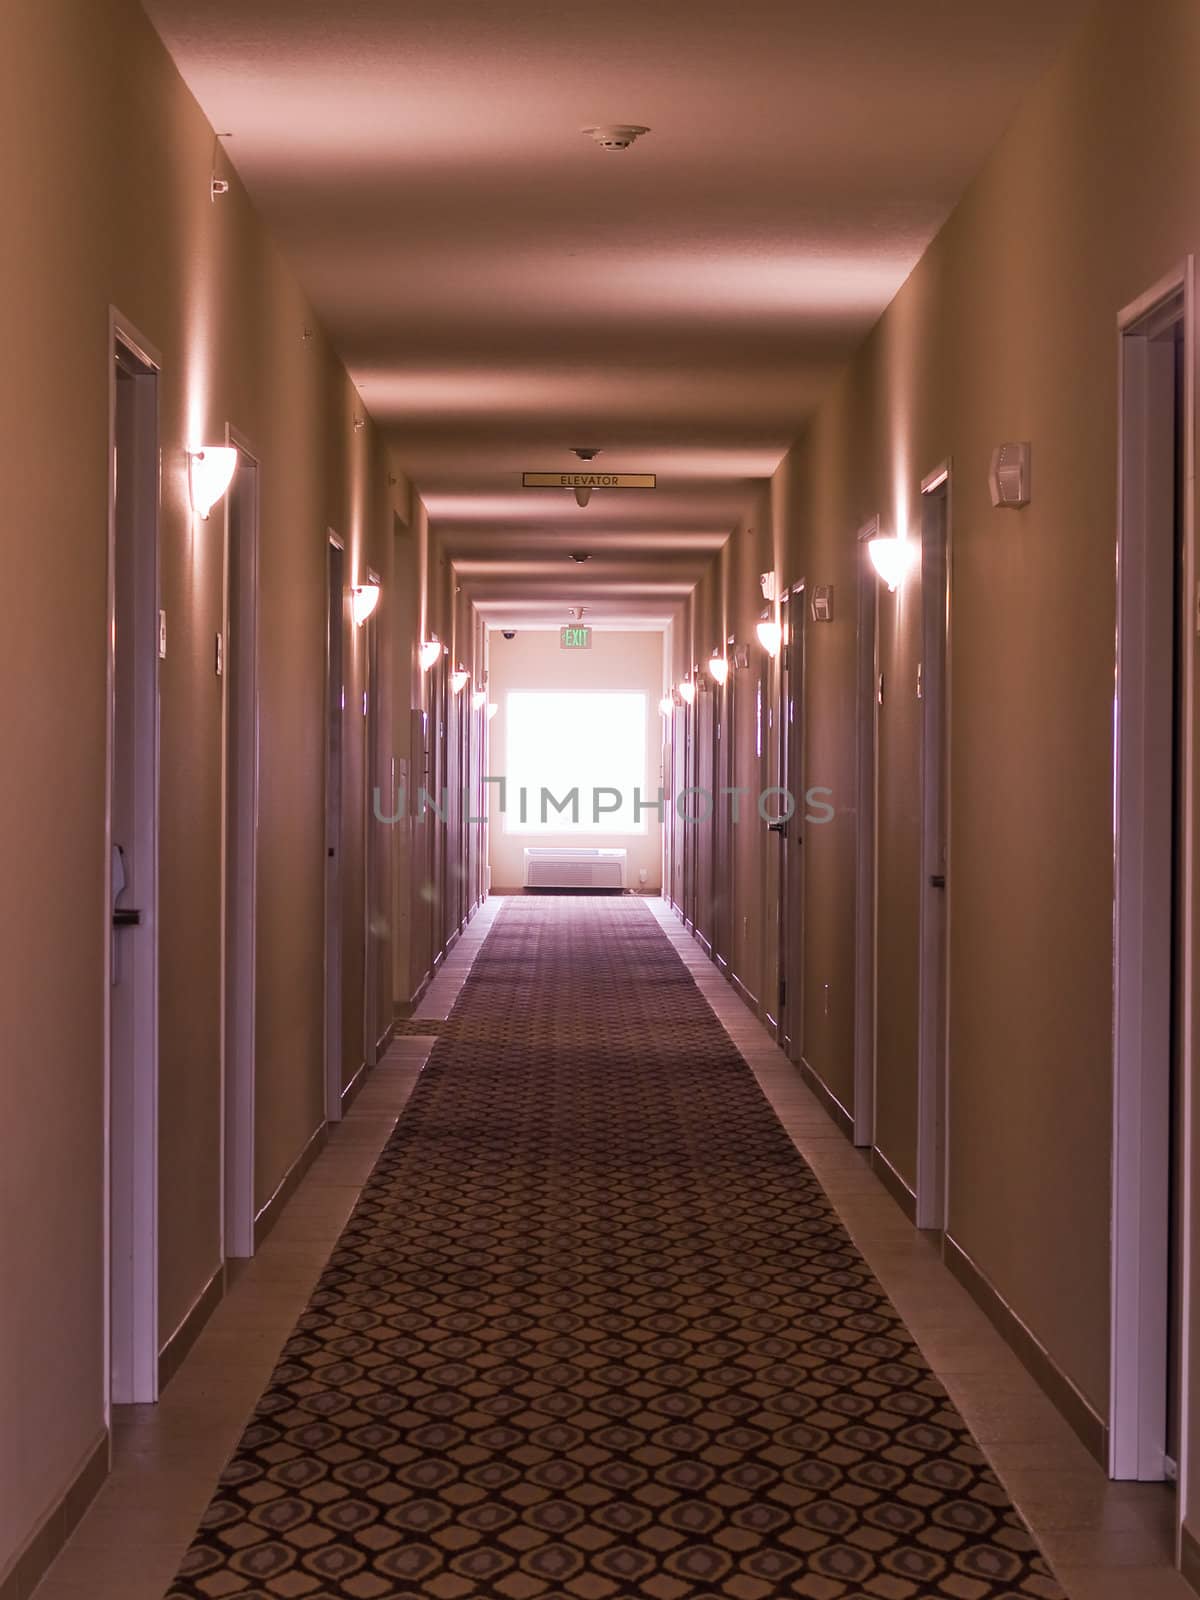 Empty hotel corridor in monochrome pink color tone